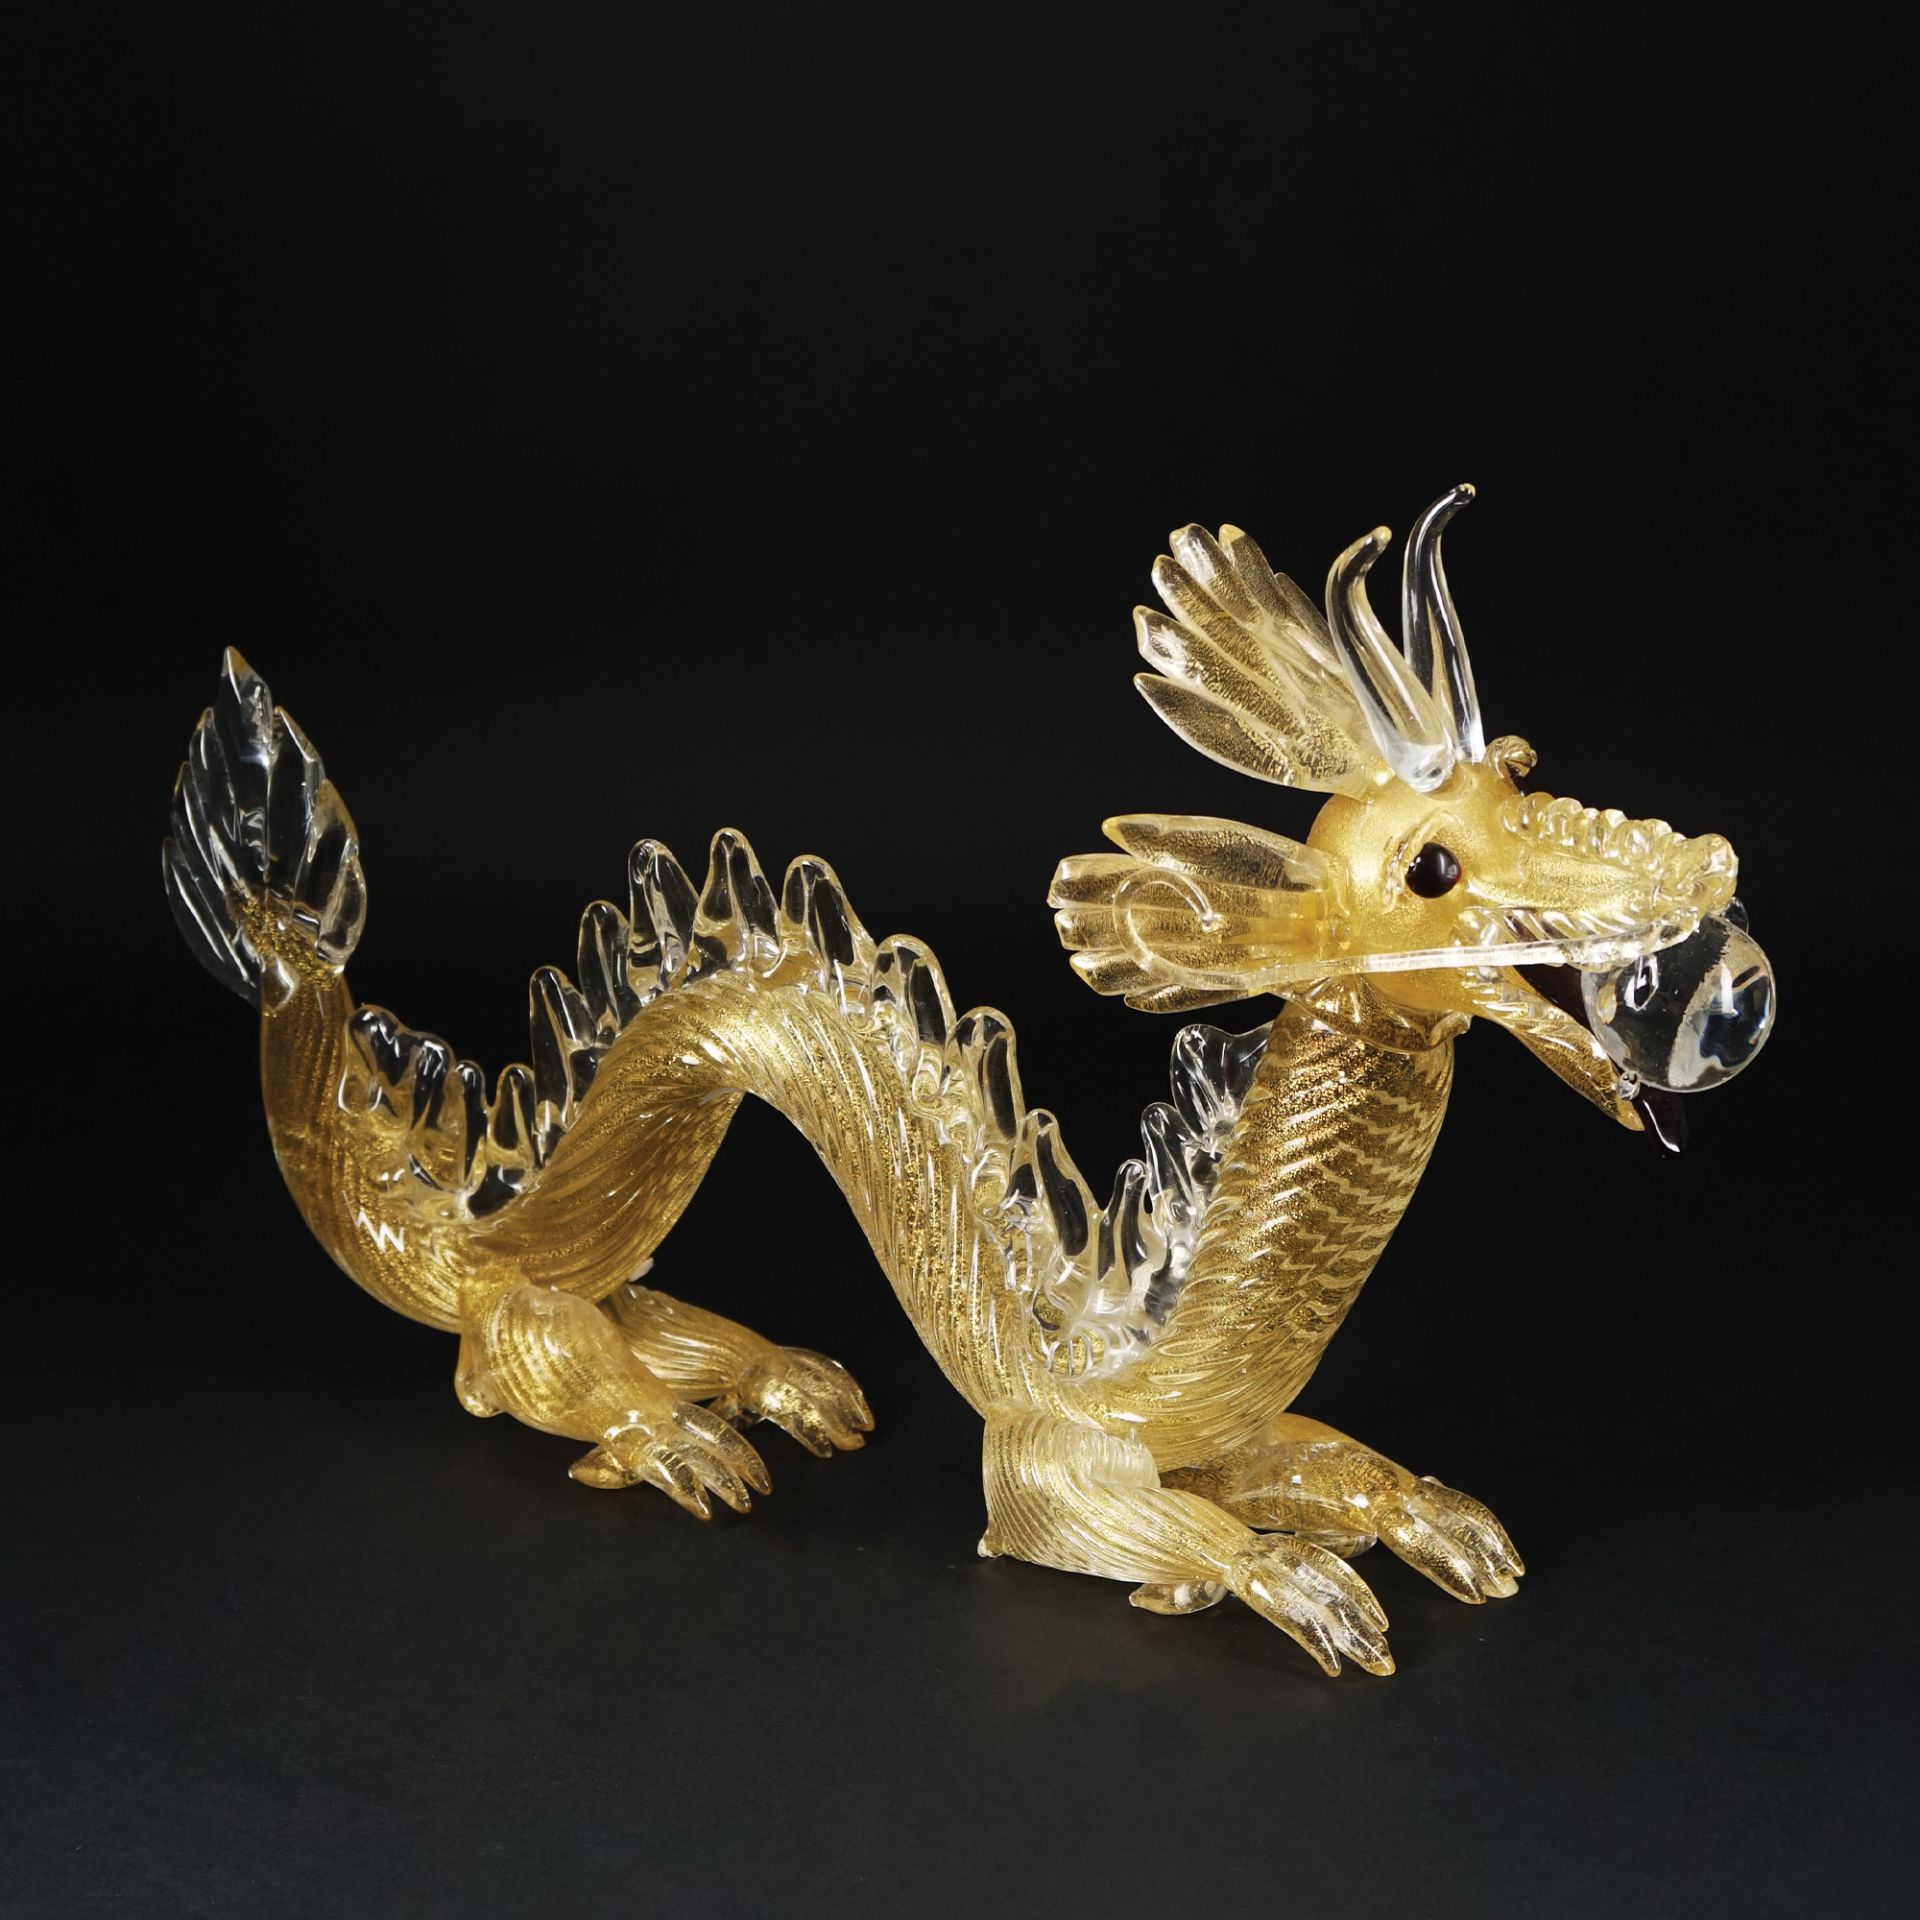 A Murano gilt glass figure of a dragon, Alessandro Barbaro